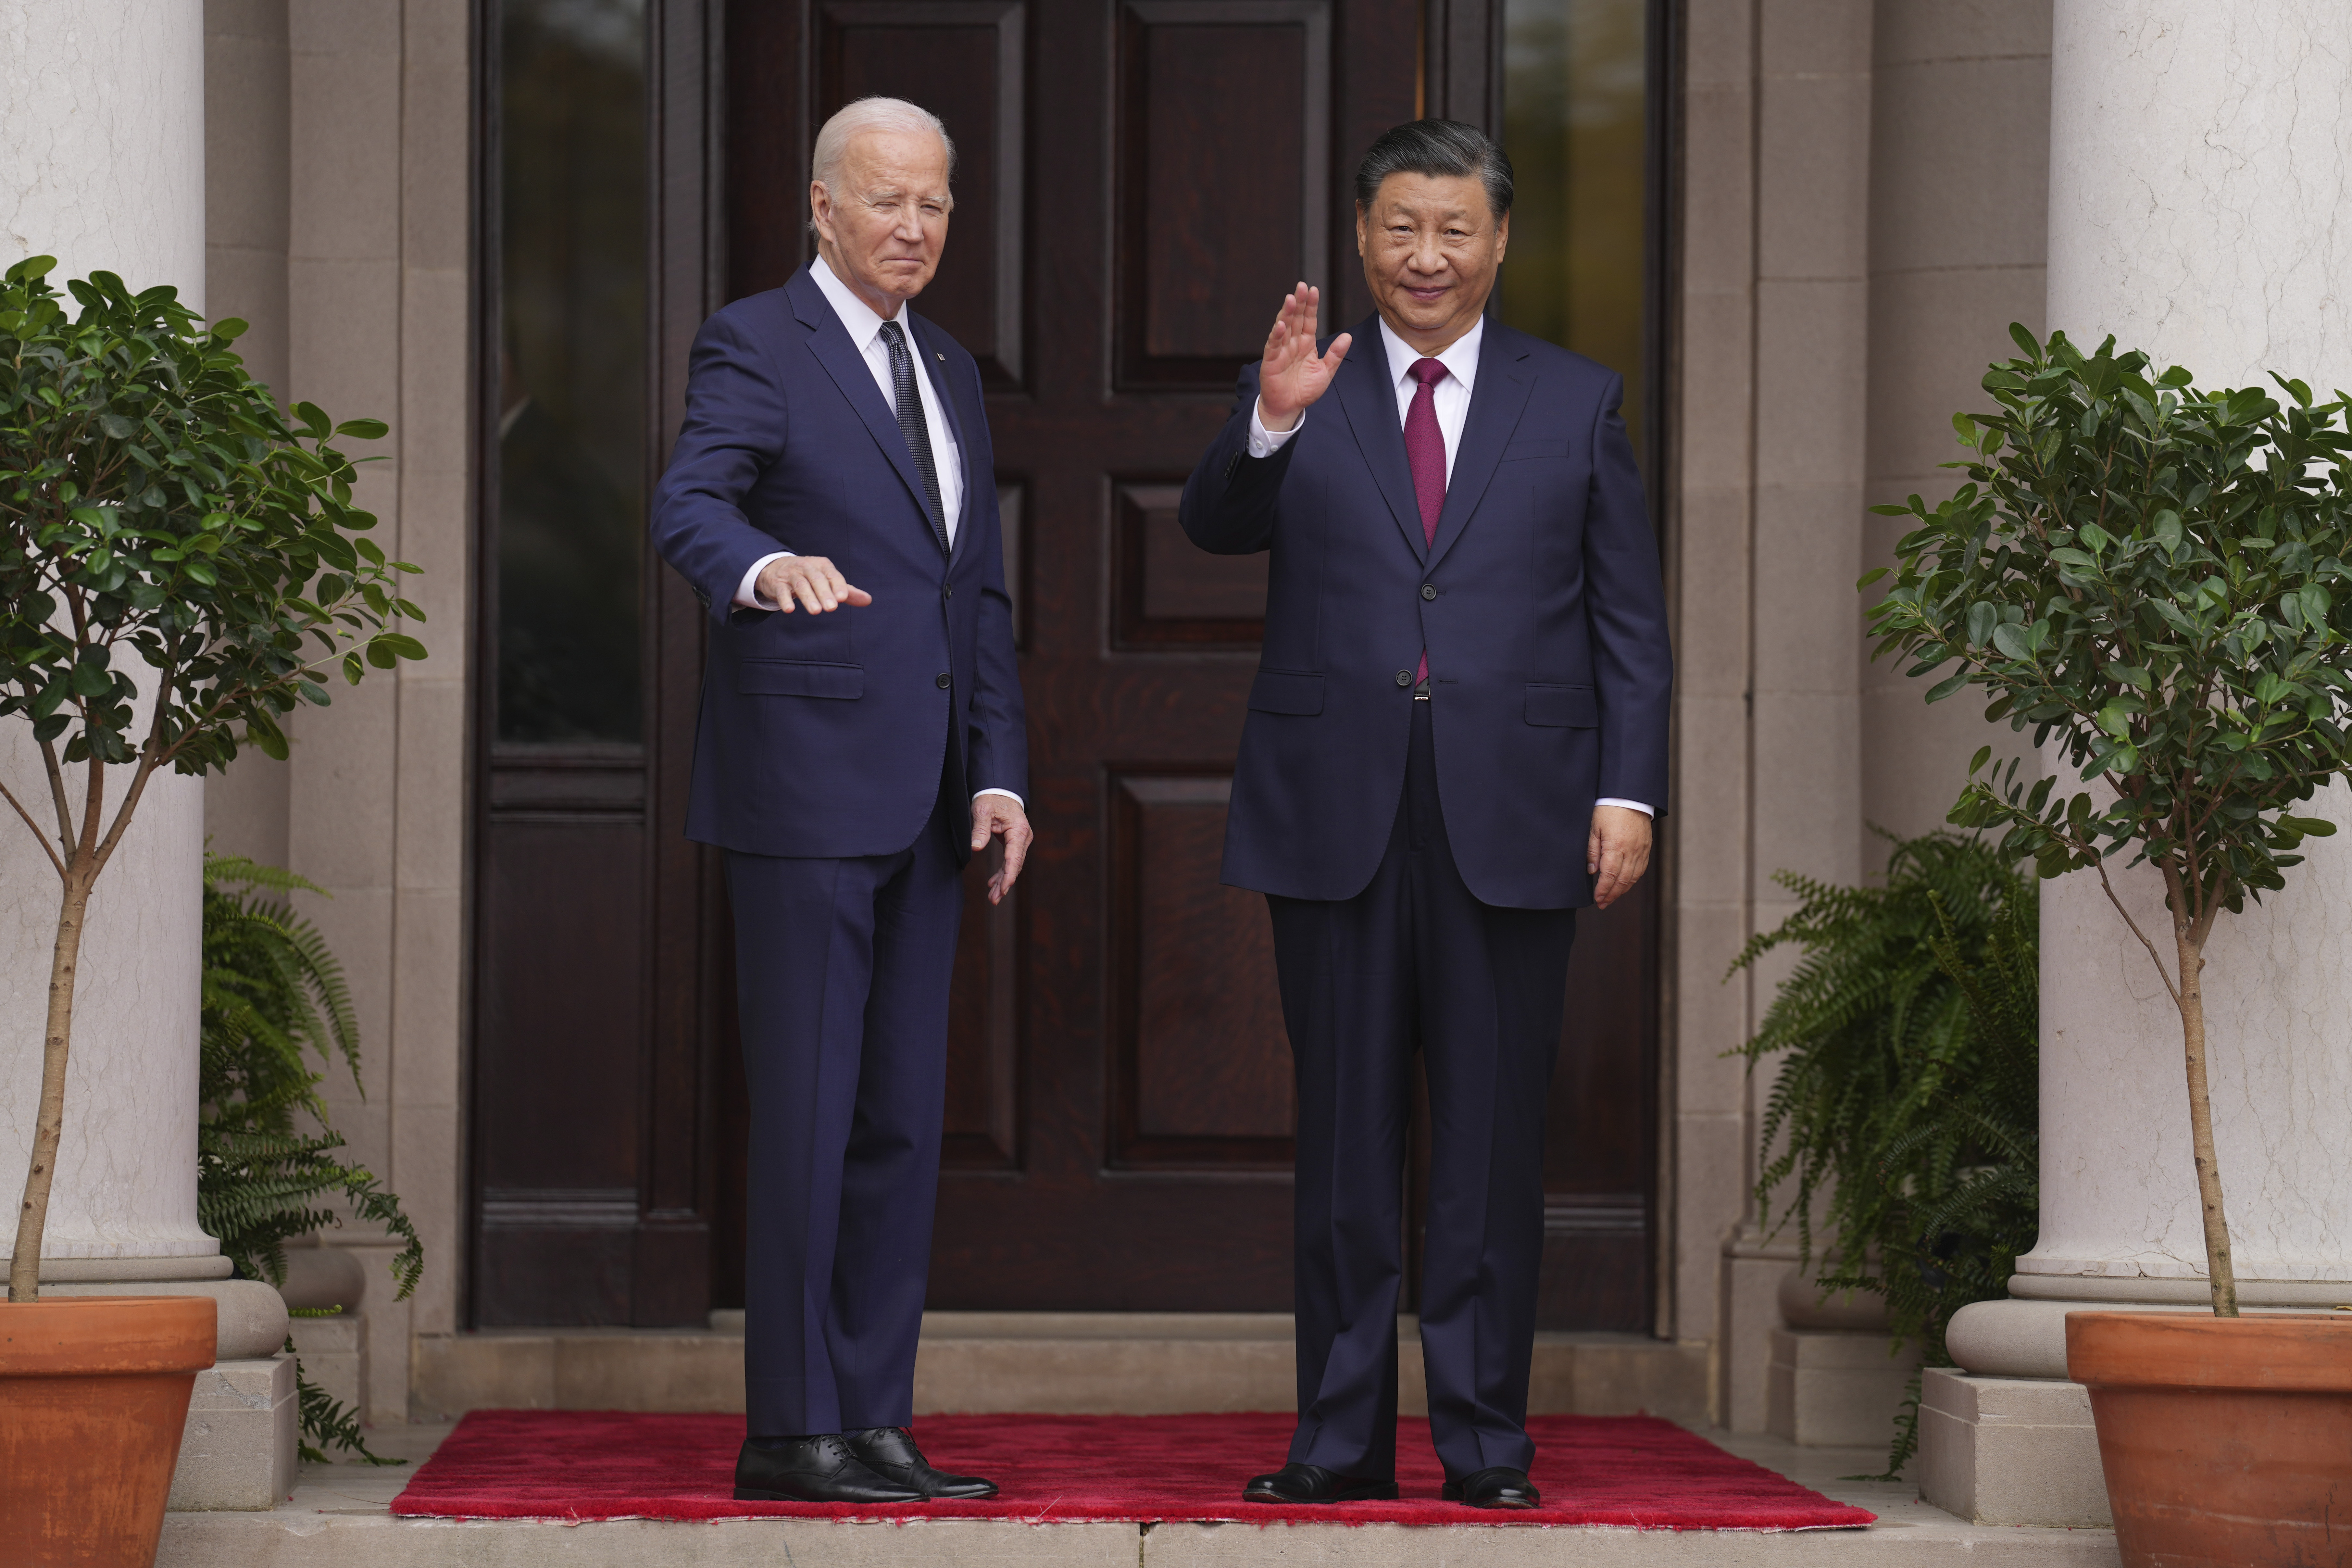 Joe Biden Xi Jinping Metting